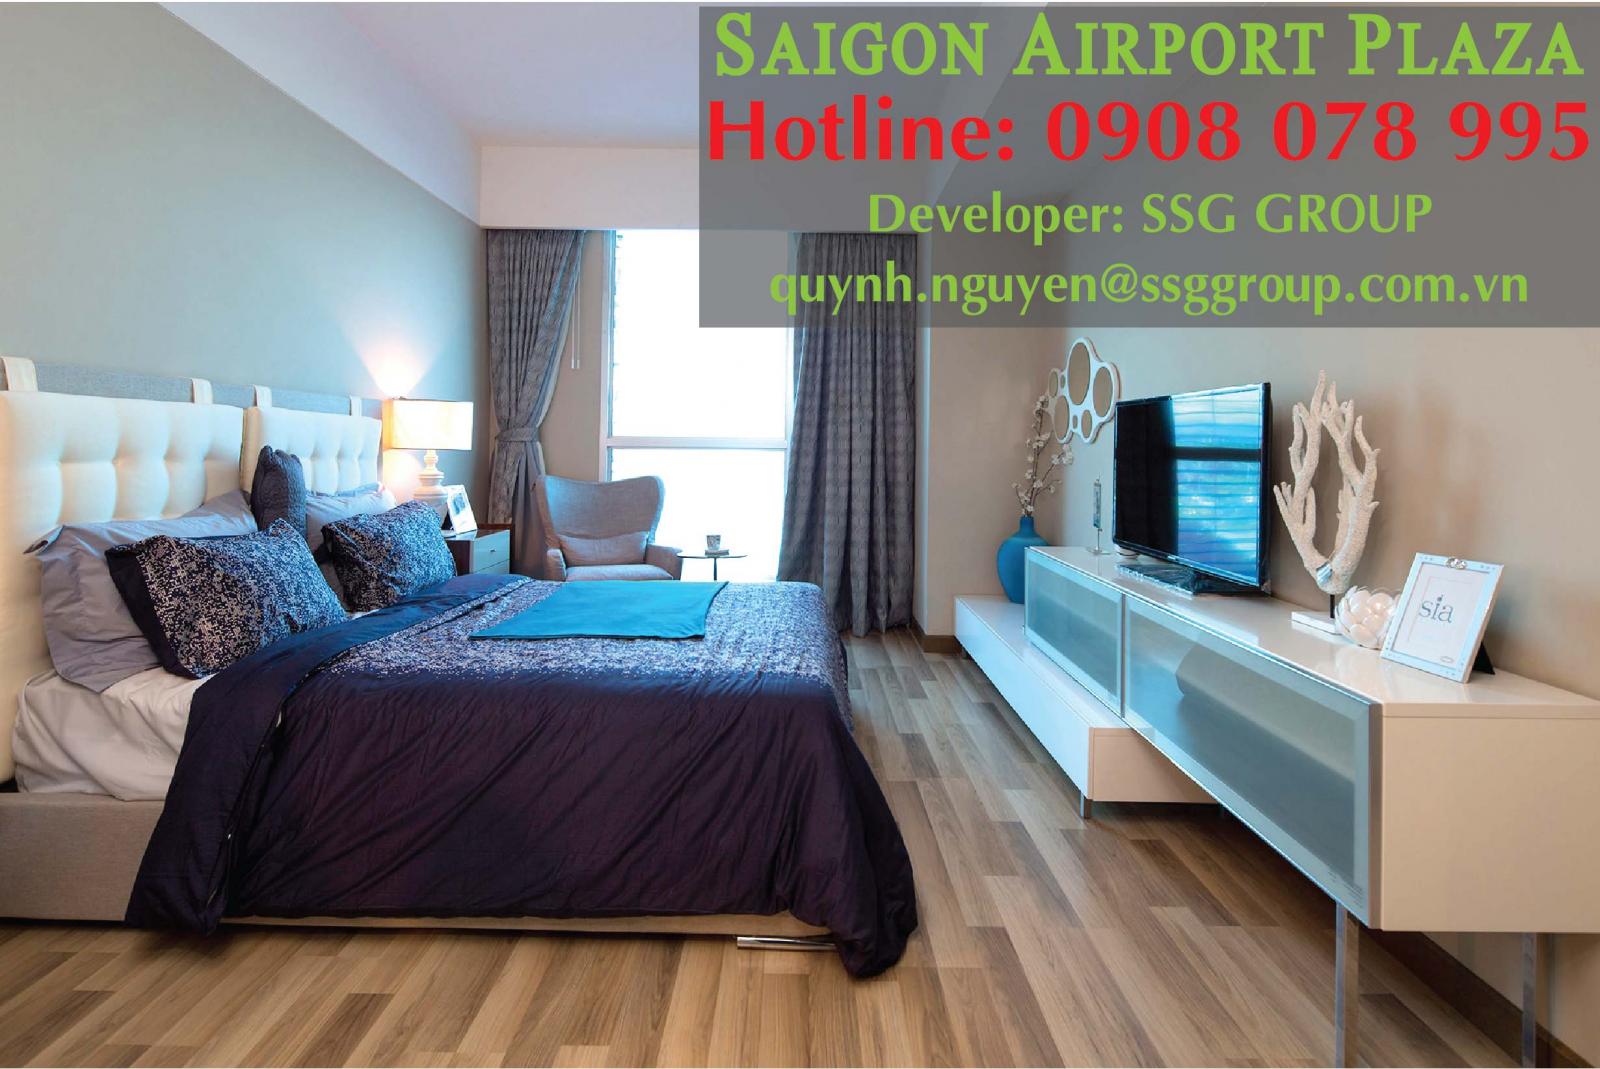 Saigon Airport Plaza Q.Tân Bình_Chỉ 18 triệu thuê ngay Căn hộ 2PN - 95M2 - full nội thất. Hotline PKD SSG 0908 078 995 xem nhà ngay